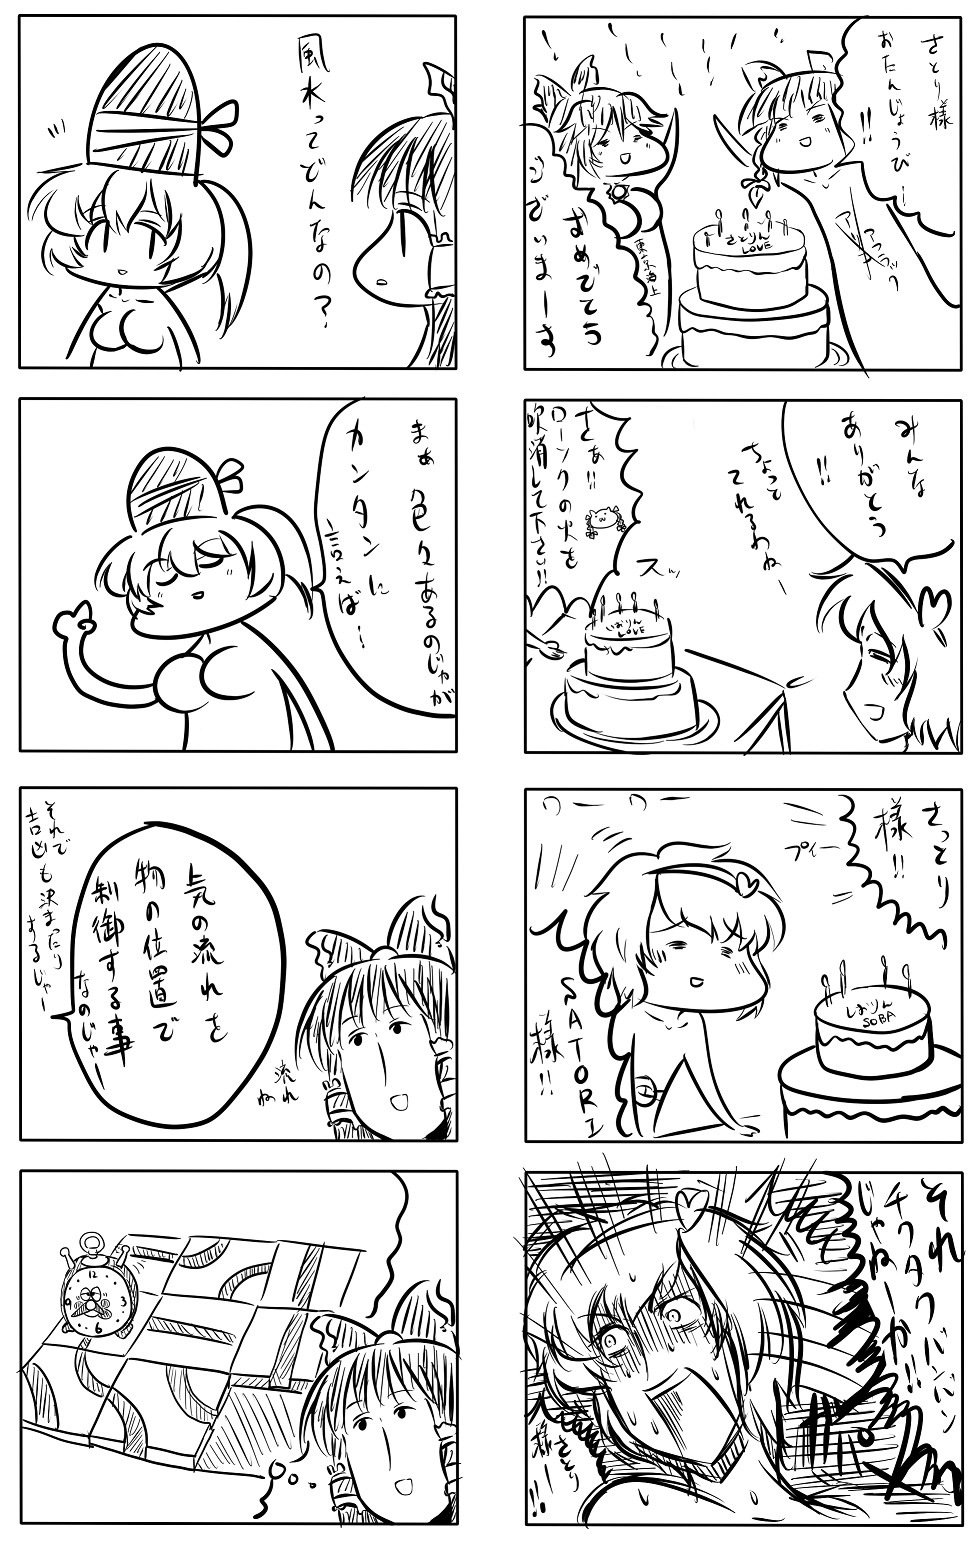 東方漫画409-光戦隊マスクマン東京海上